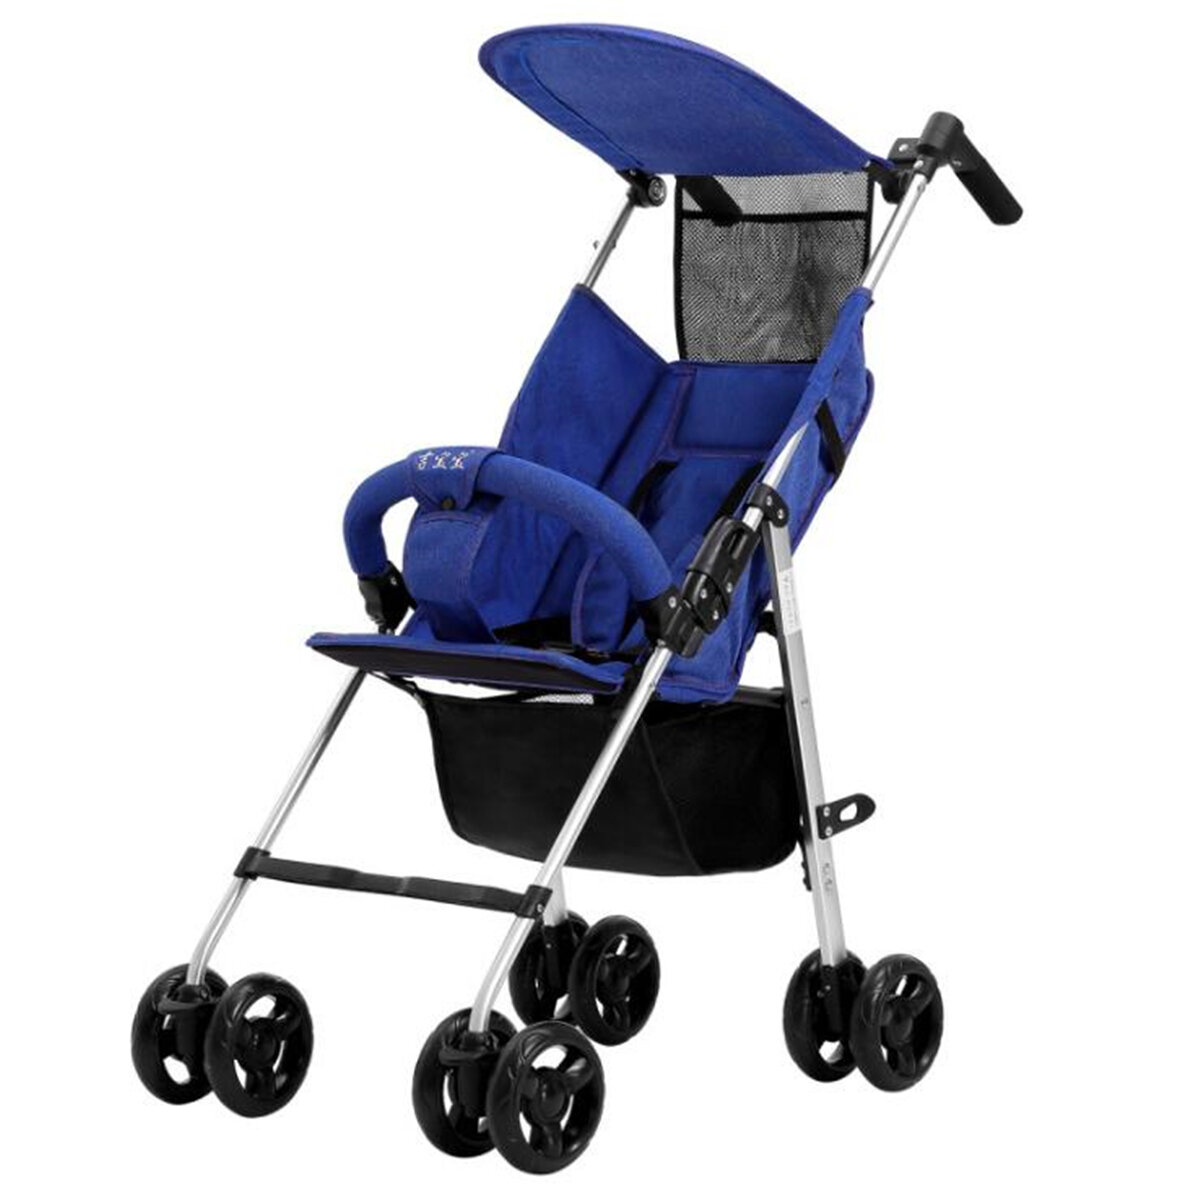 Cochecito de bebé plegable Niño y silla de paseo infantil Asiento de seguridad infantil ligero